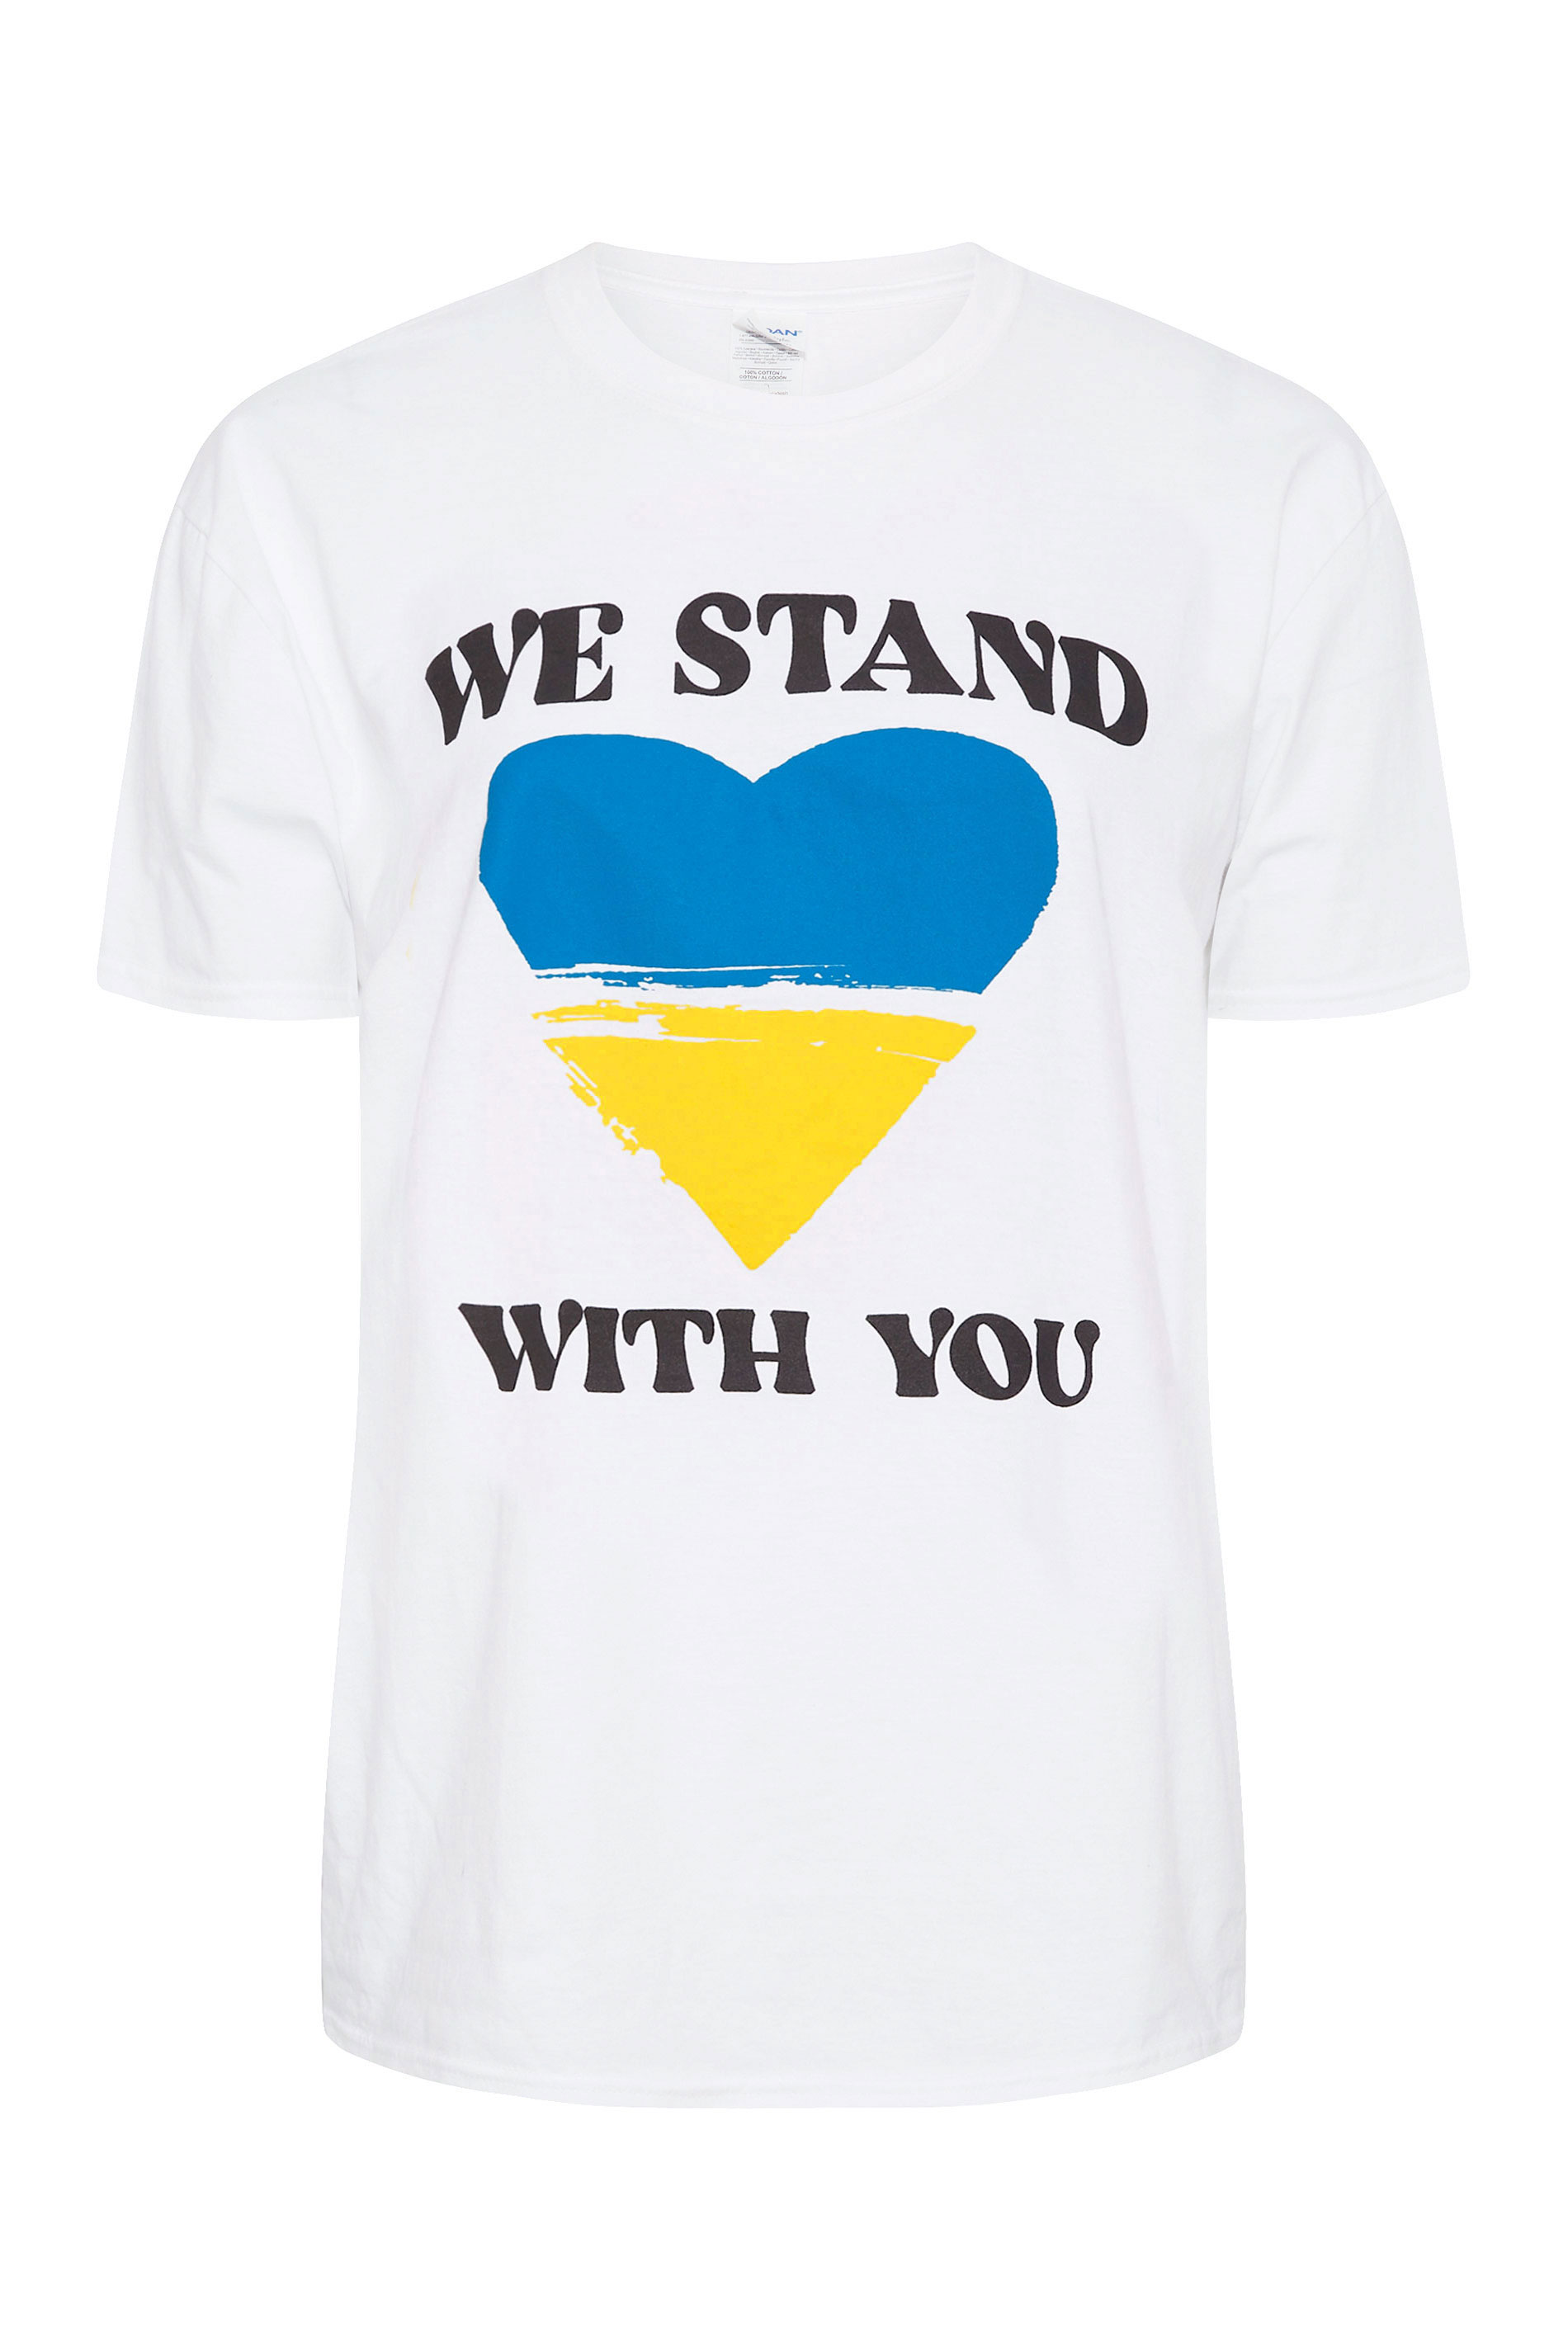 Grande taille  Tops Grande taille  T-Shirts | T-Shirt We Stand With You 100% des dons en soutien à la crise Ukrainienne - KP05182